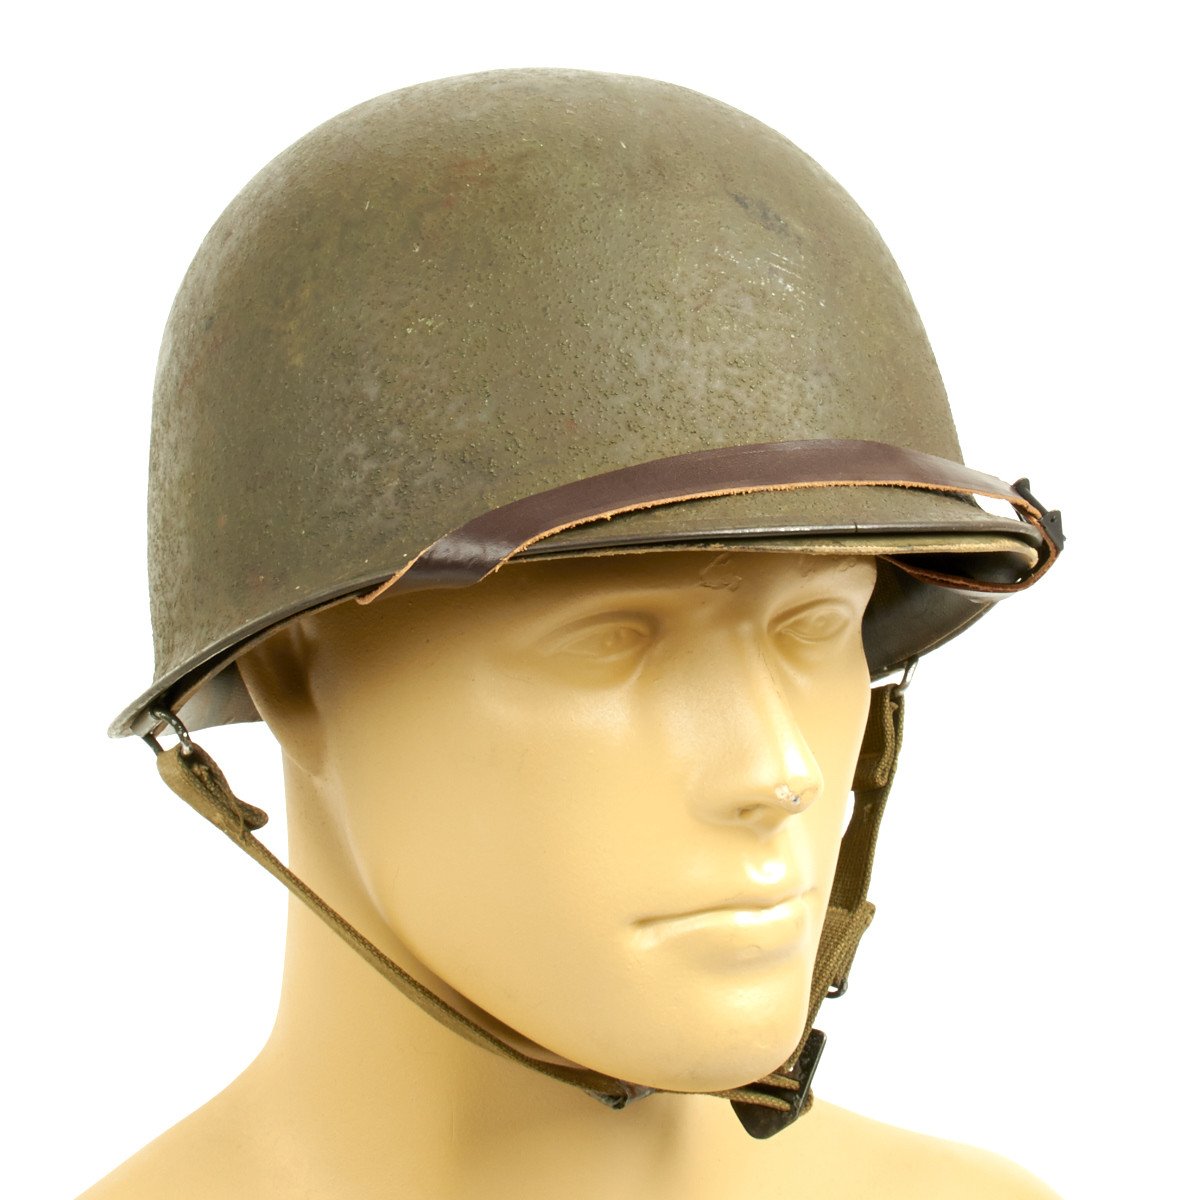 Us Army Ww2 Helmet - Army Military